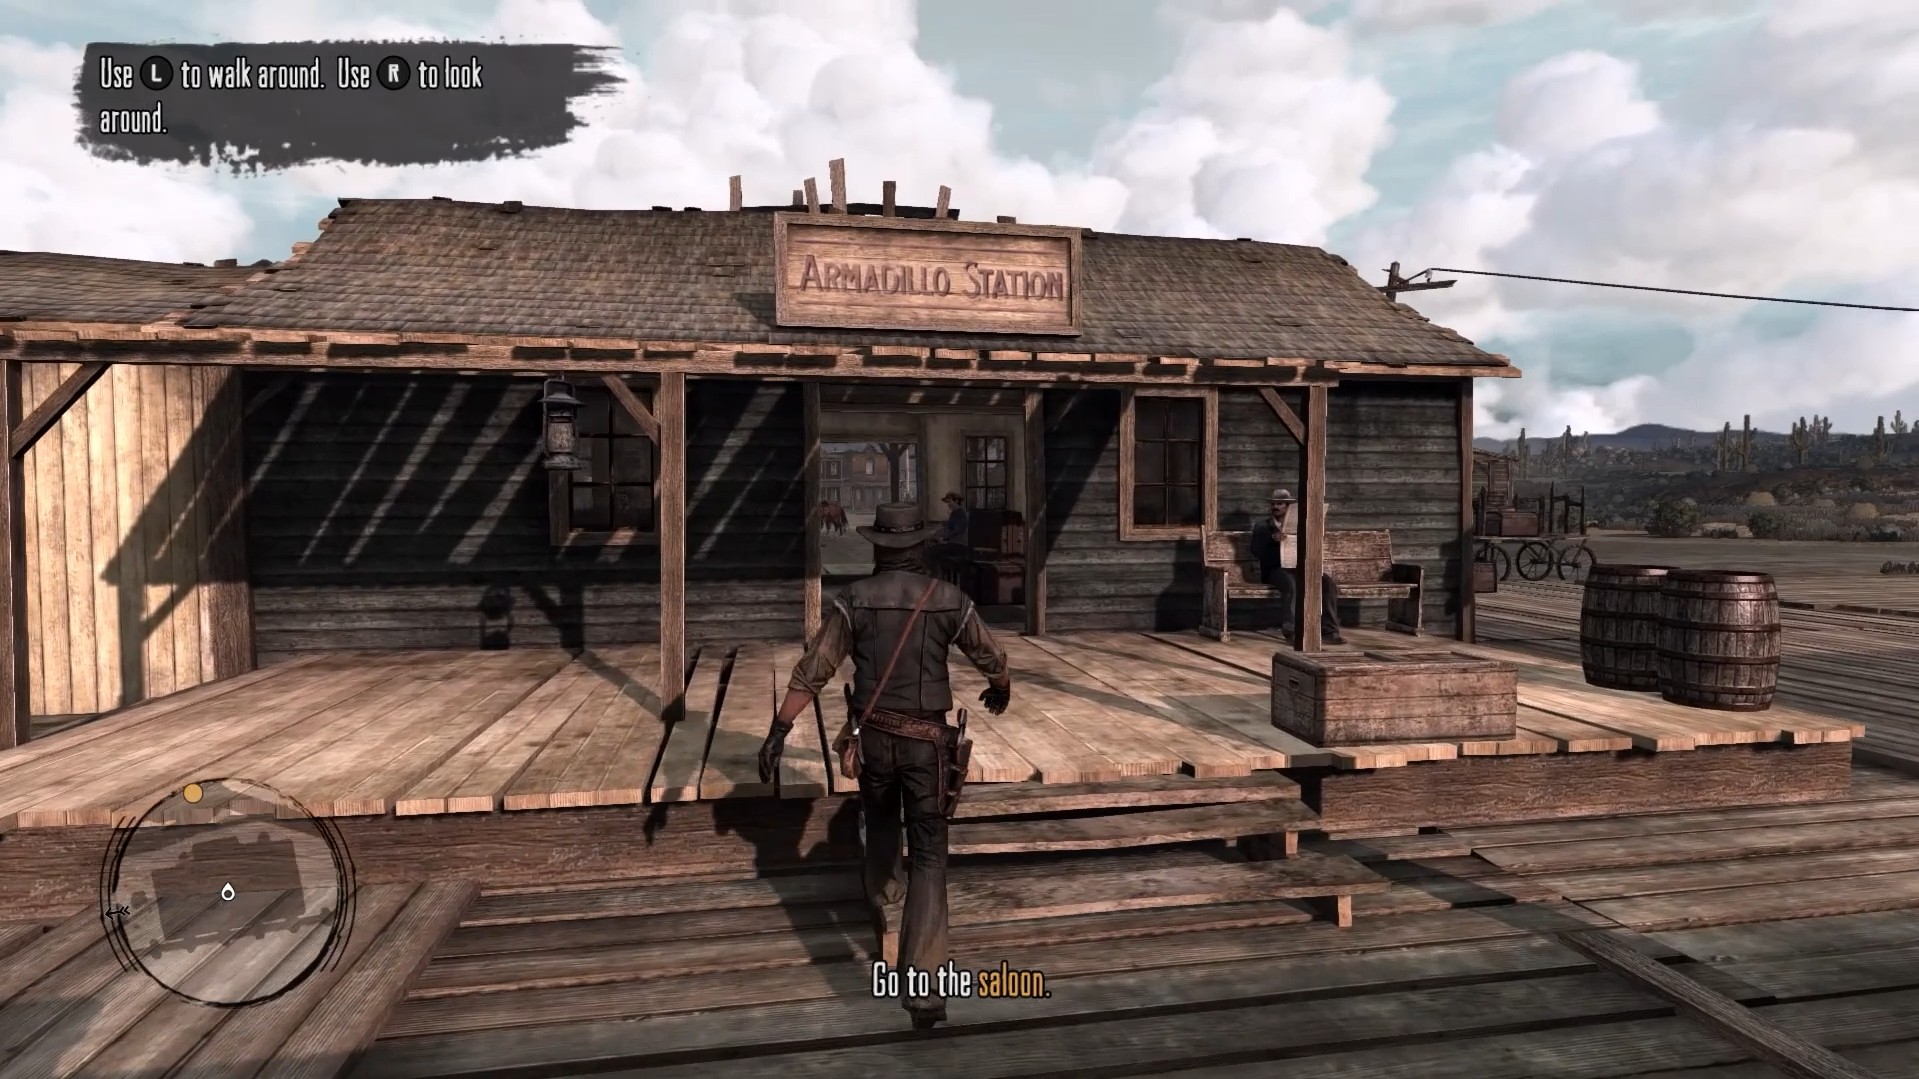 Red Dead Redemption Comparison - Xbox 360 vs. Xbox One X 